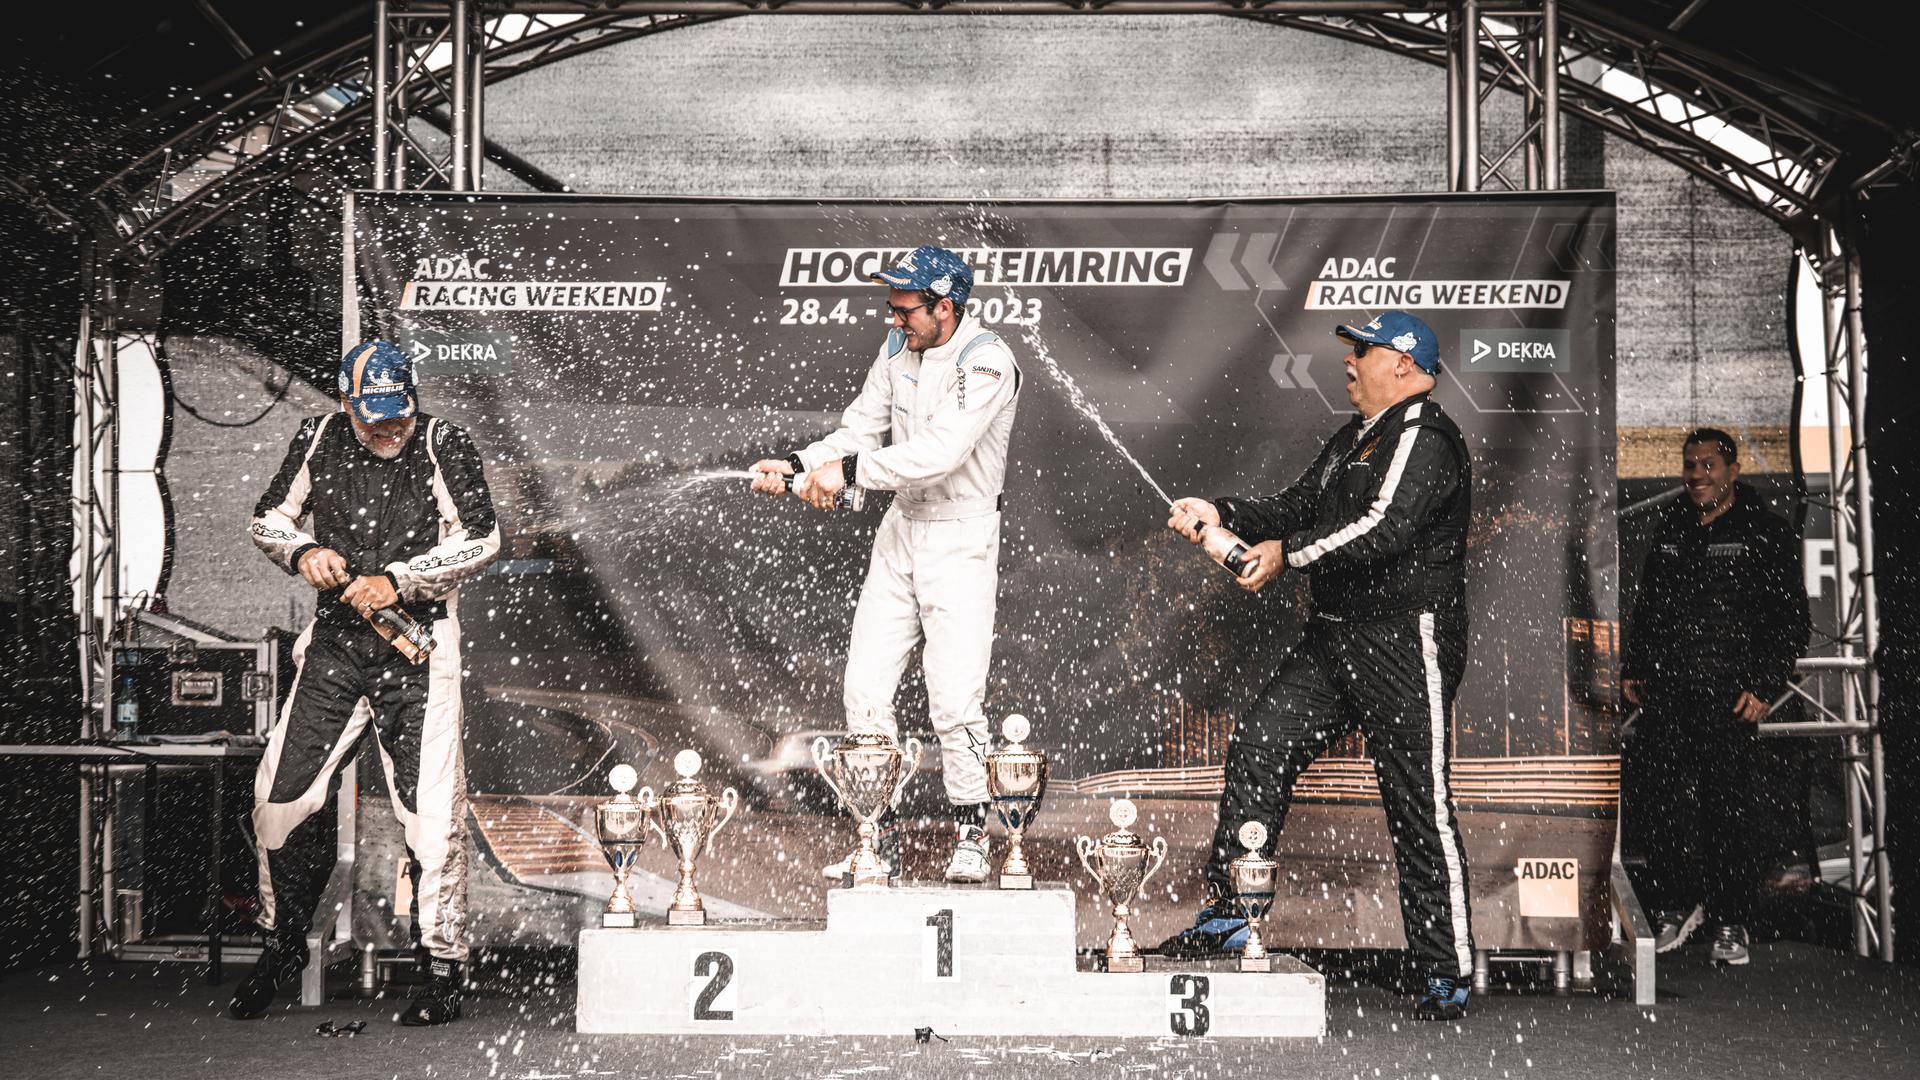 Drei Rennfahrer auf dem Siegerpodest, in der Mitte Yannik Dinger aus Lauf, feiern mit Champagner